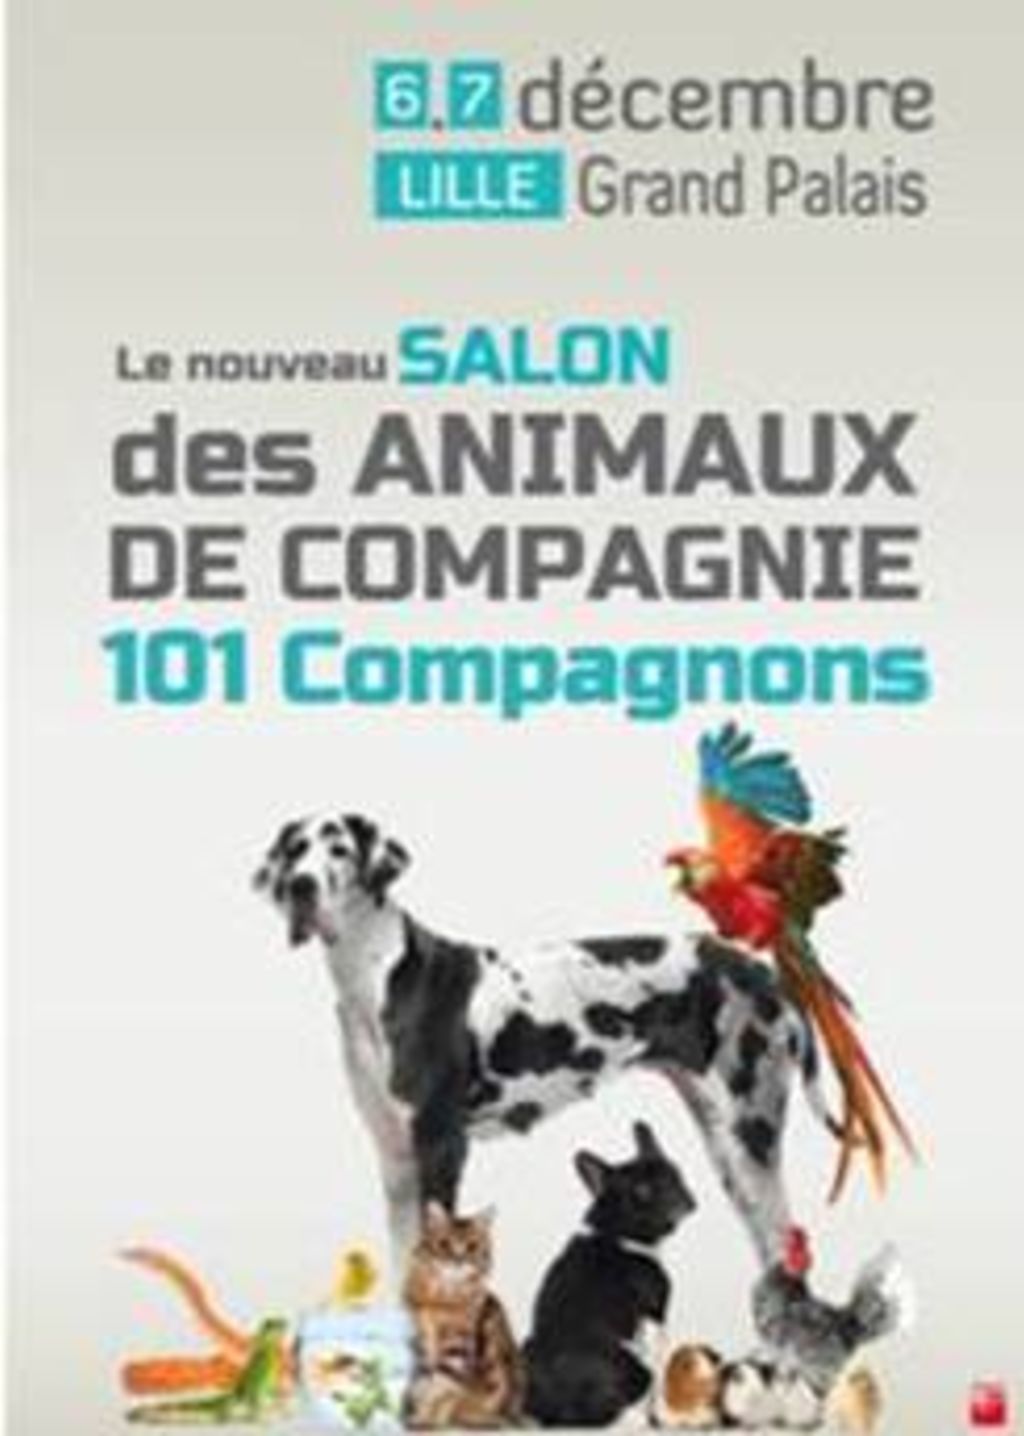 salon 101 Compagnons Lille 2014